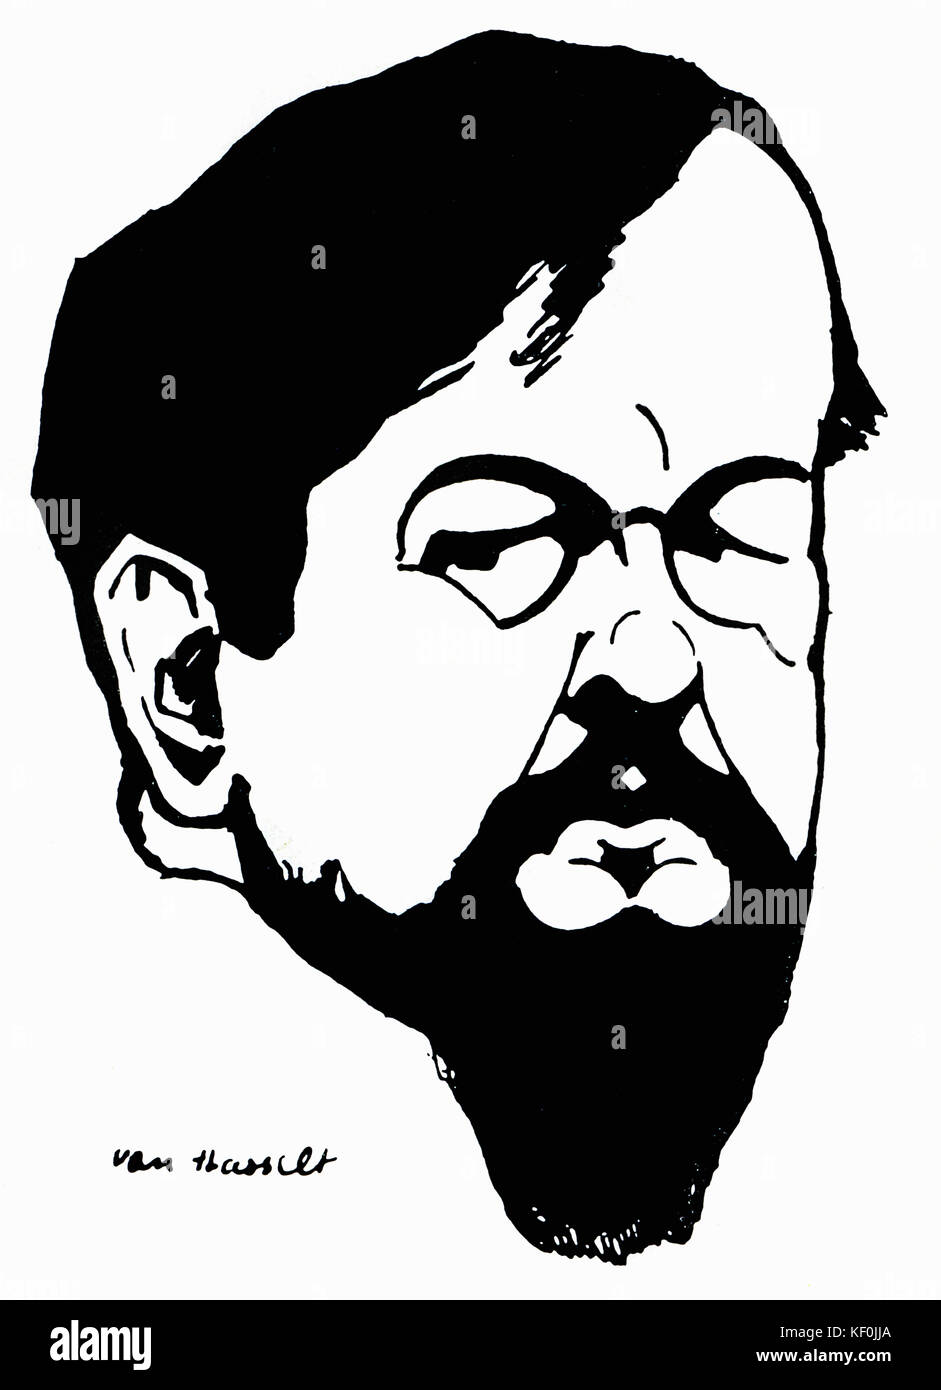 Claude Debussy - vignette portrait par Van Hasselt (dates non connues), au début du xxe siècle. CD : compositeur français, 22 août 1862 - 25 mars 1918. Banque D'Images